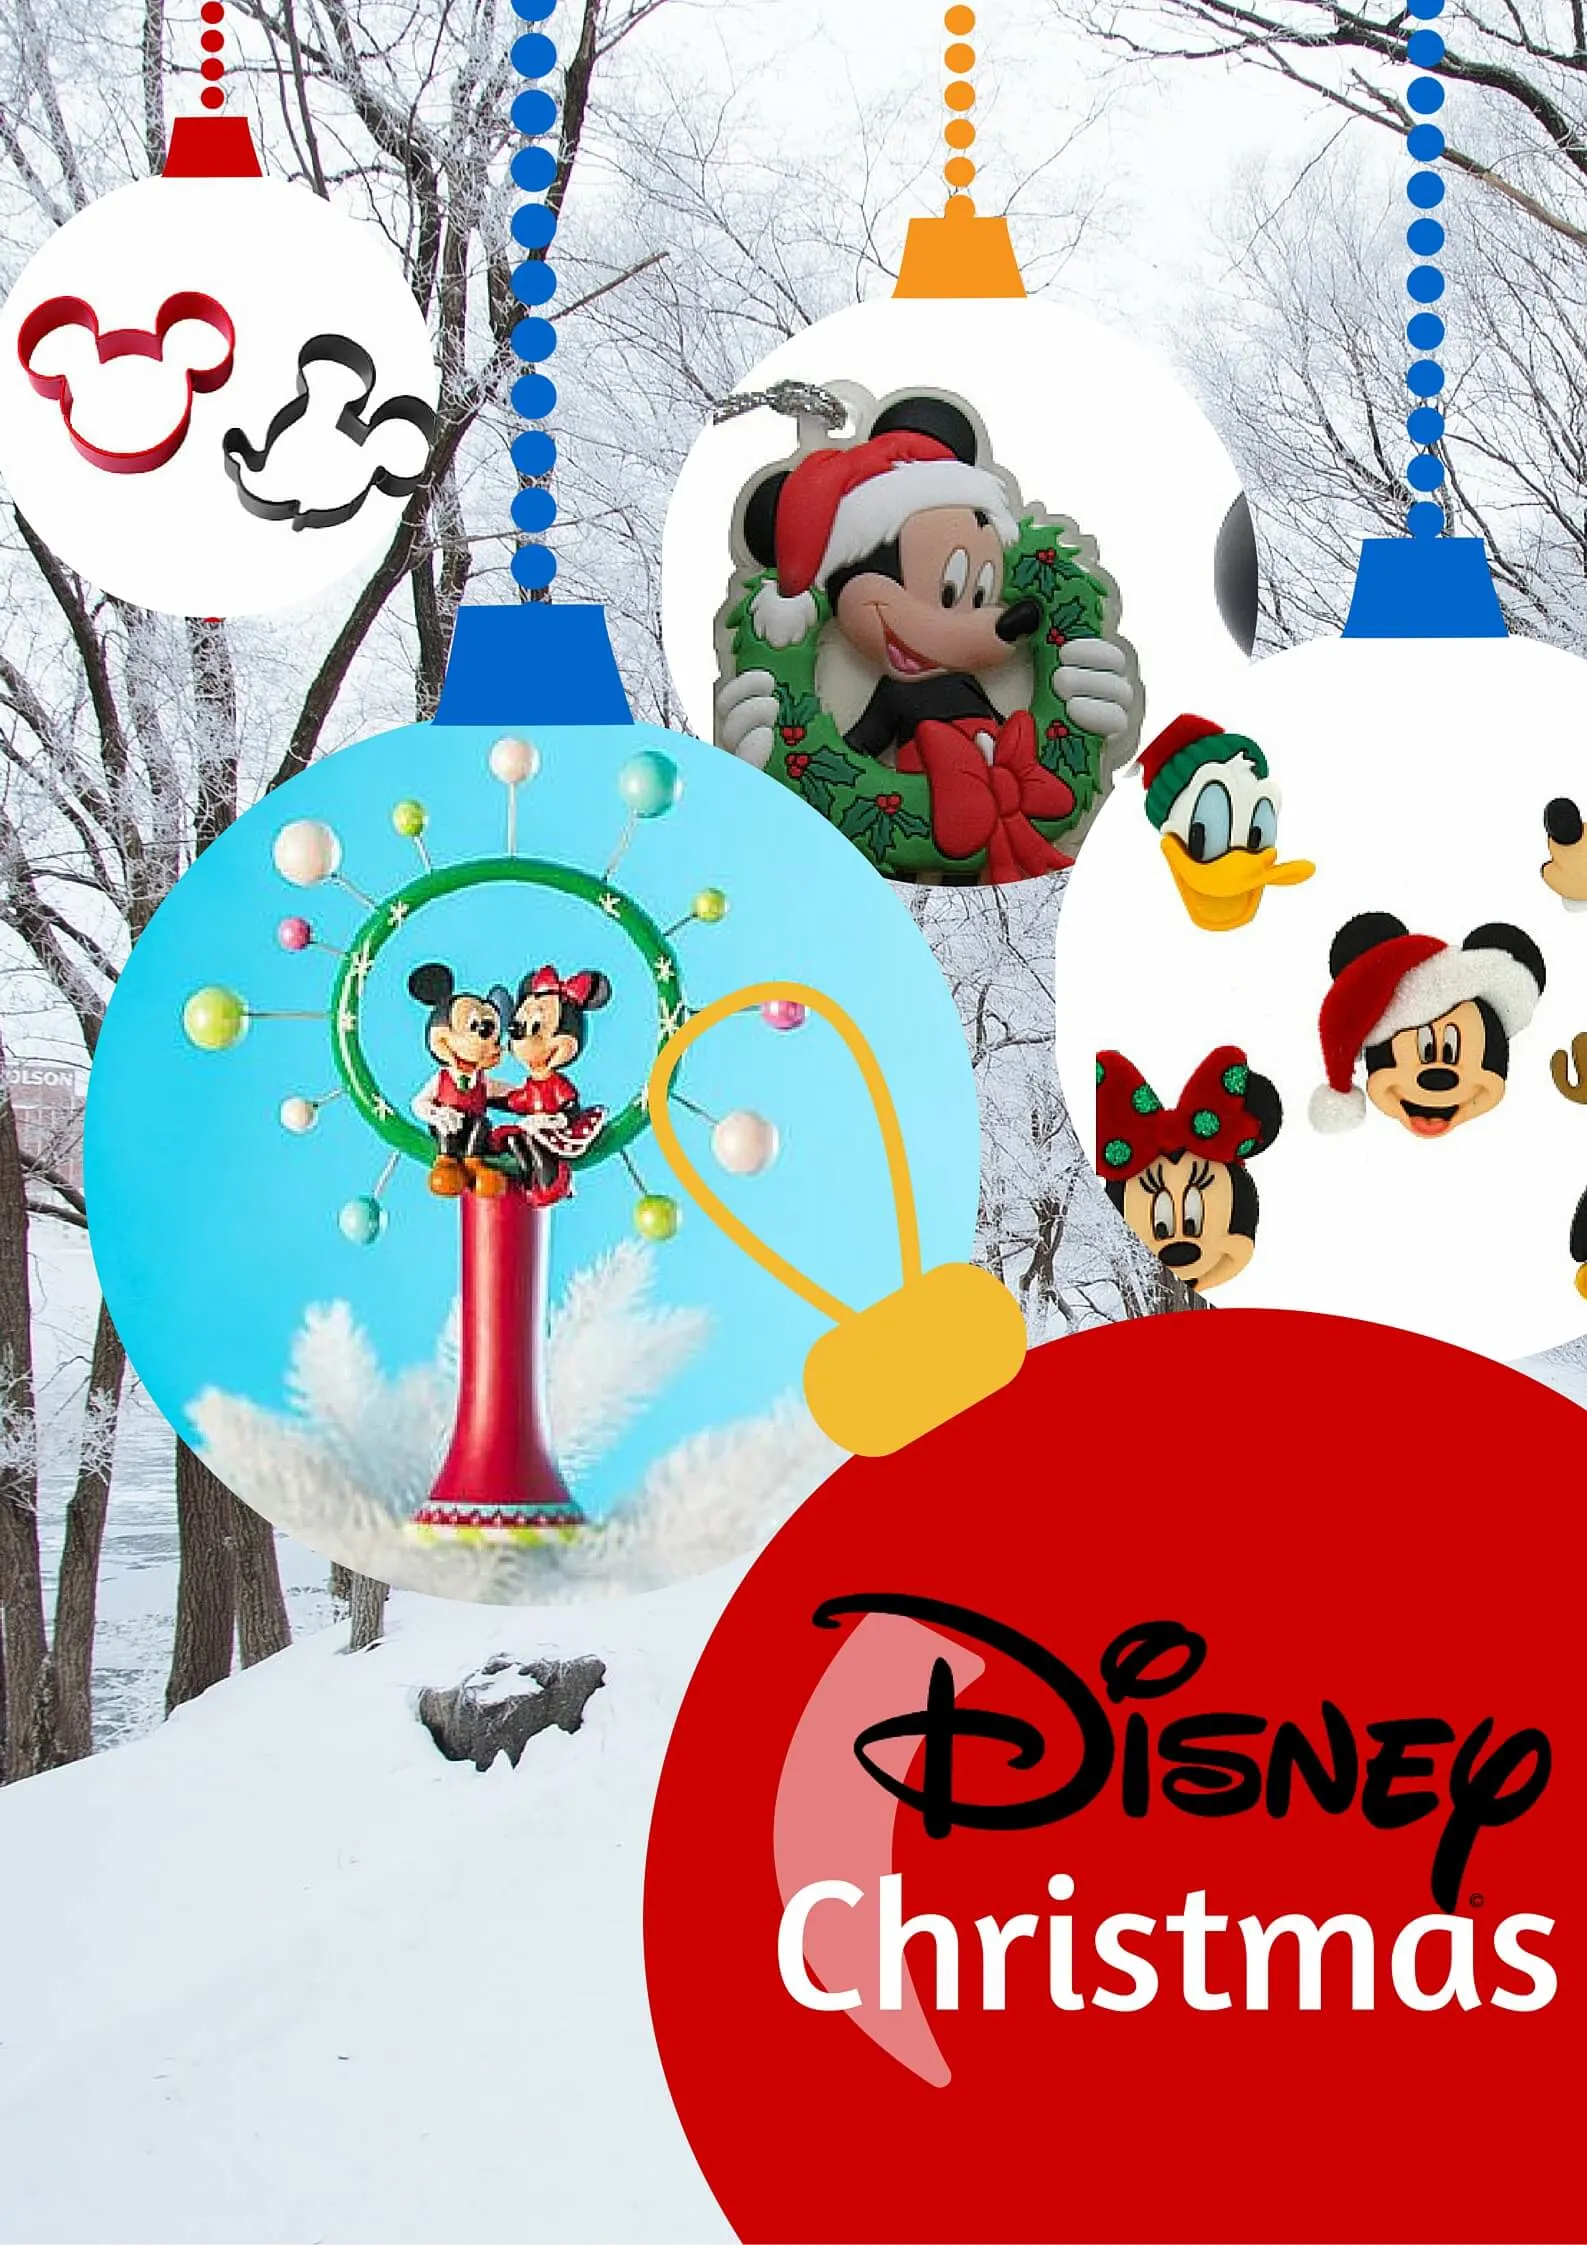 A Disney Christmas